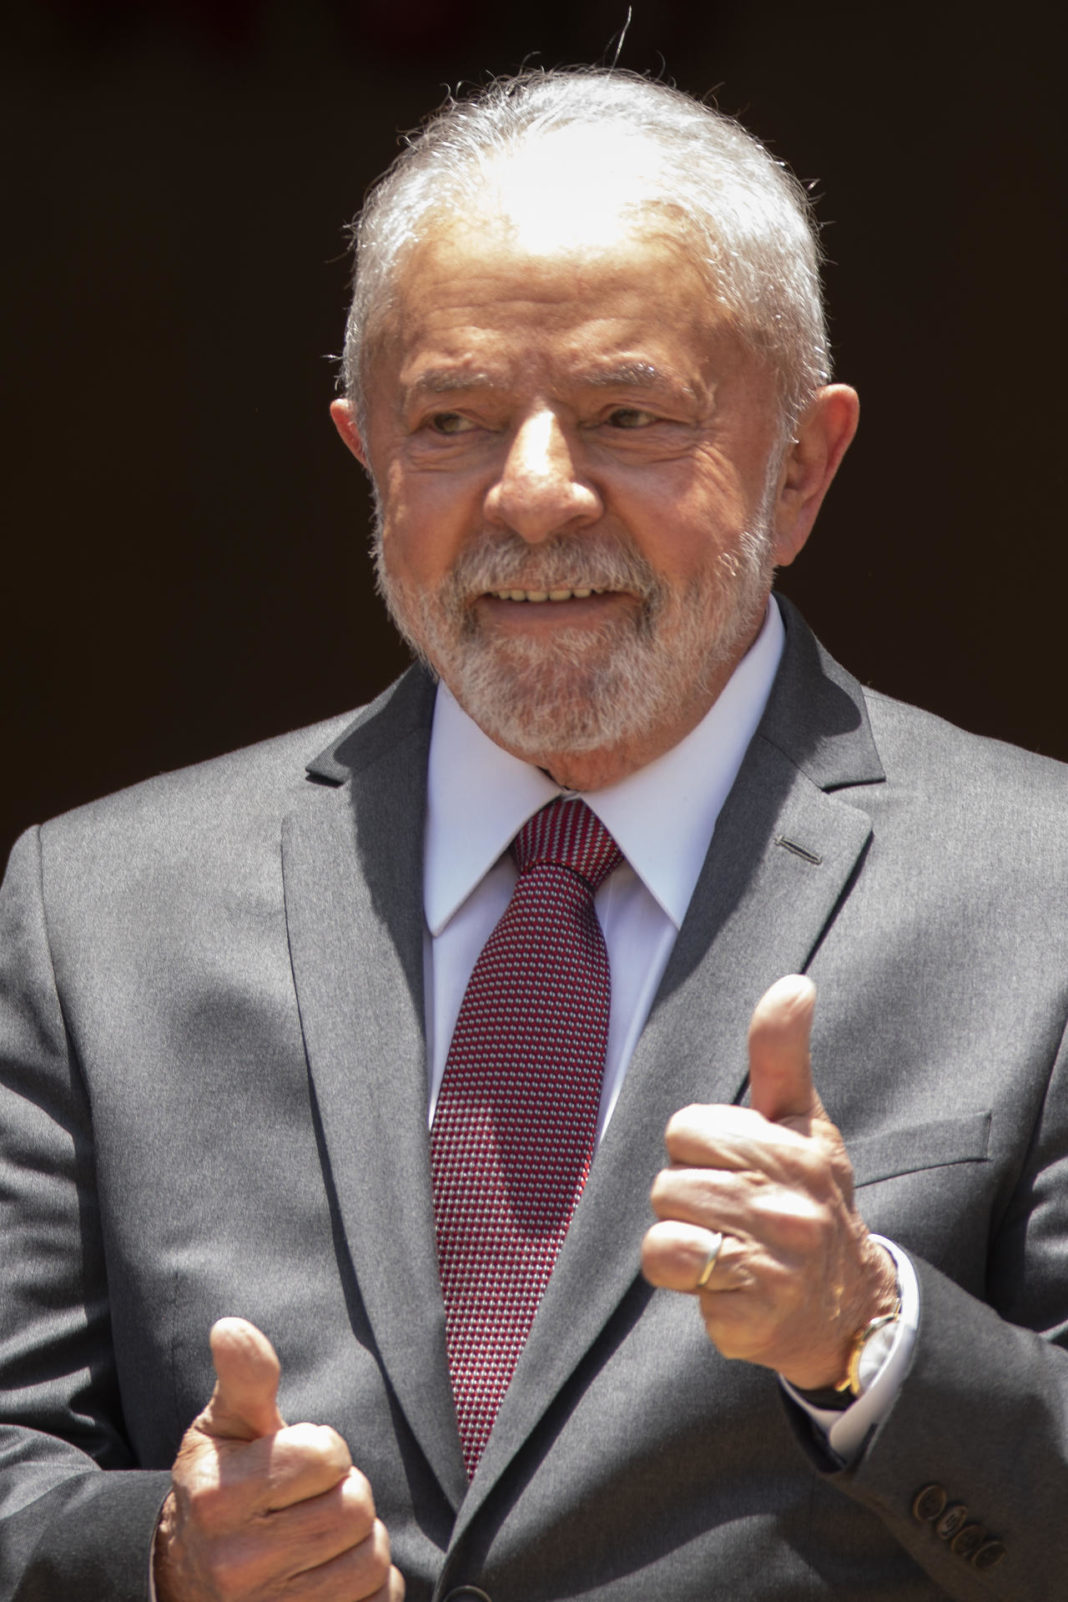 El presidente electo de Brasil, Luiz Inácio Lula da Silva, en una fotografía de archivo. EFE/Joédson Alves
